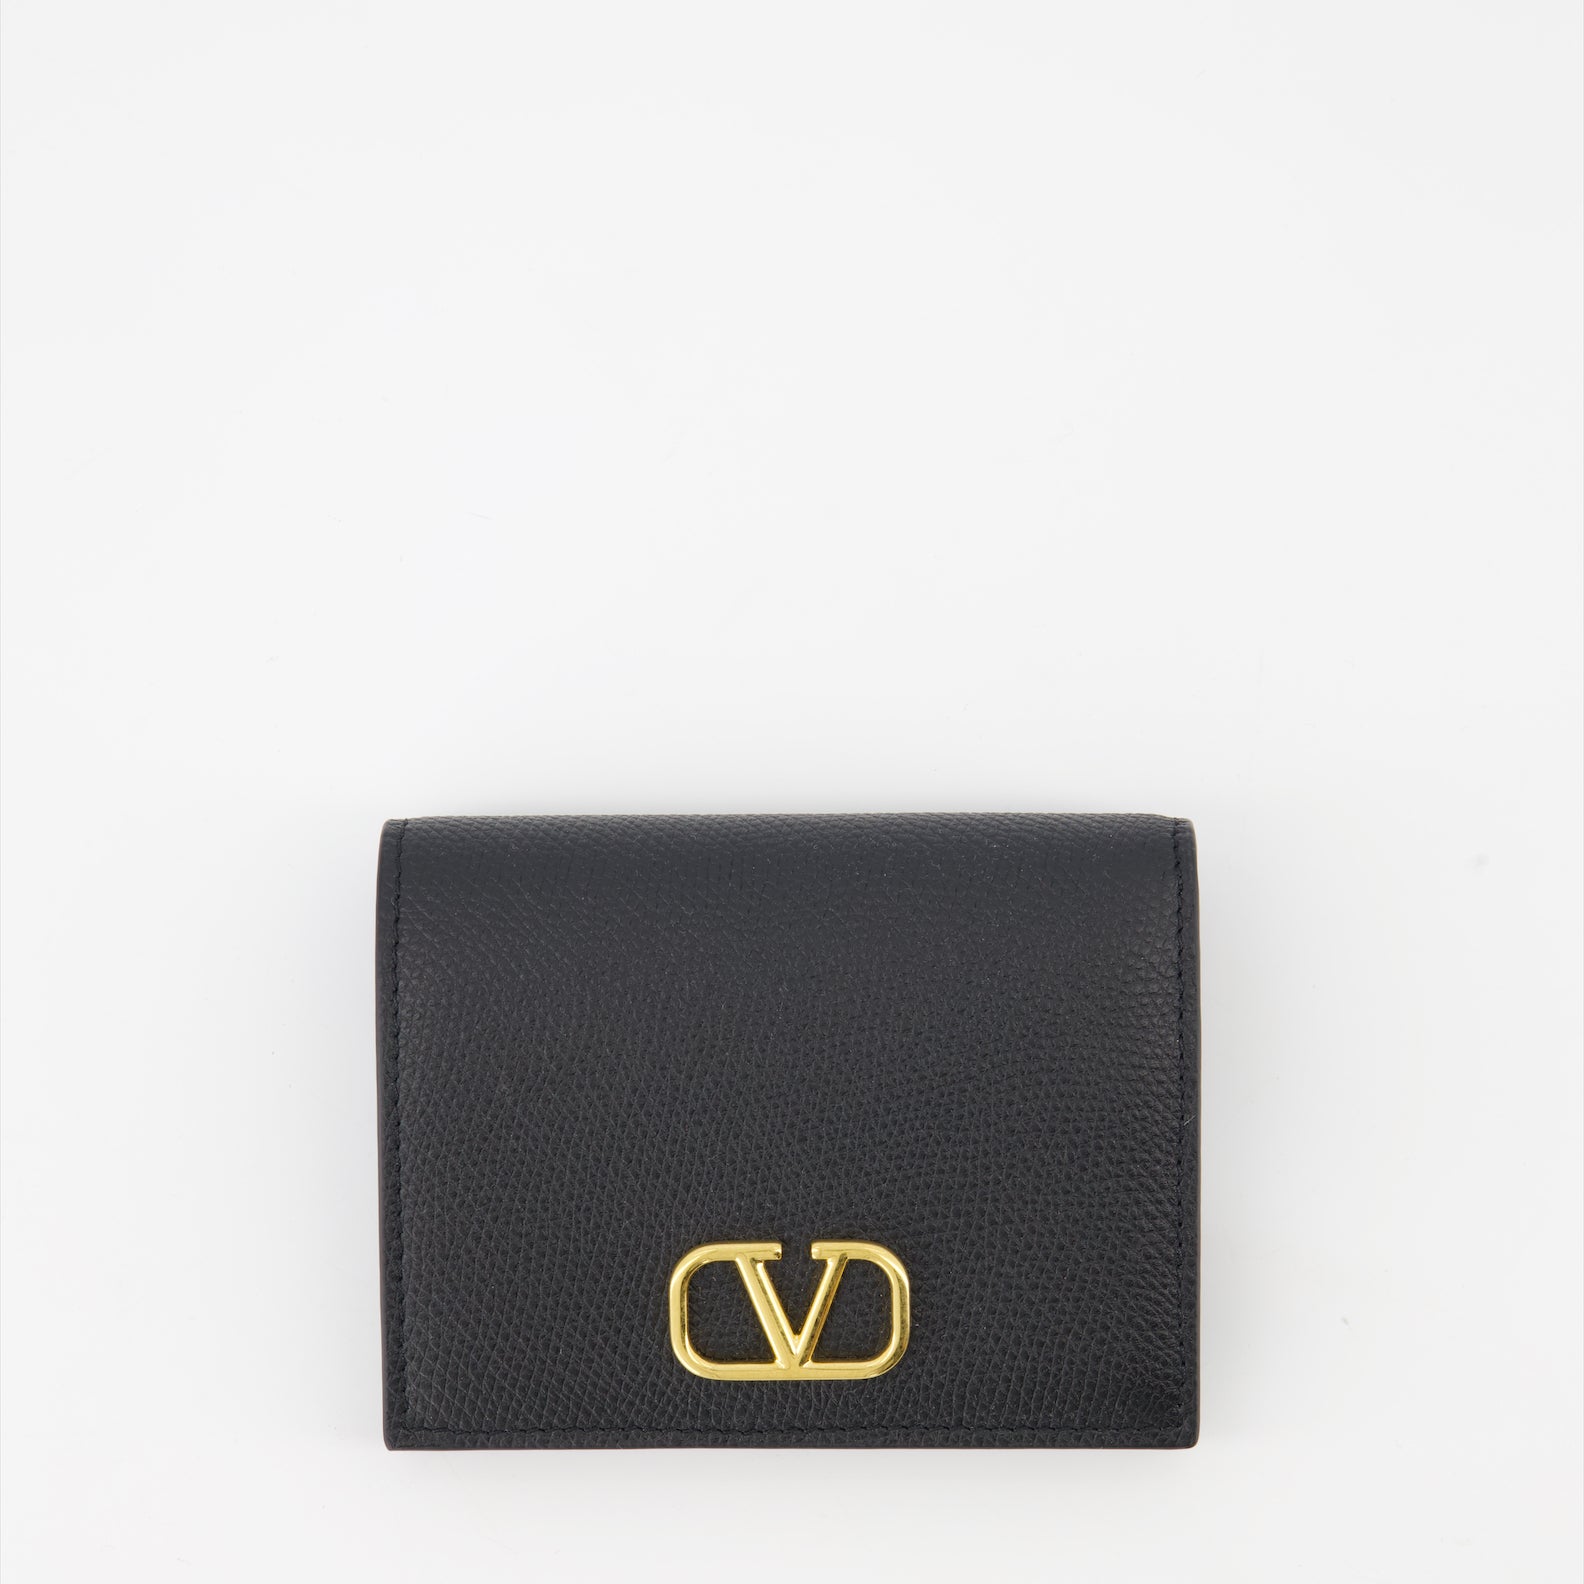 VLogo Wallet